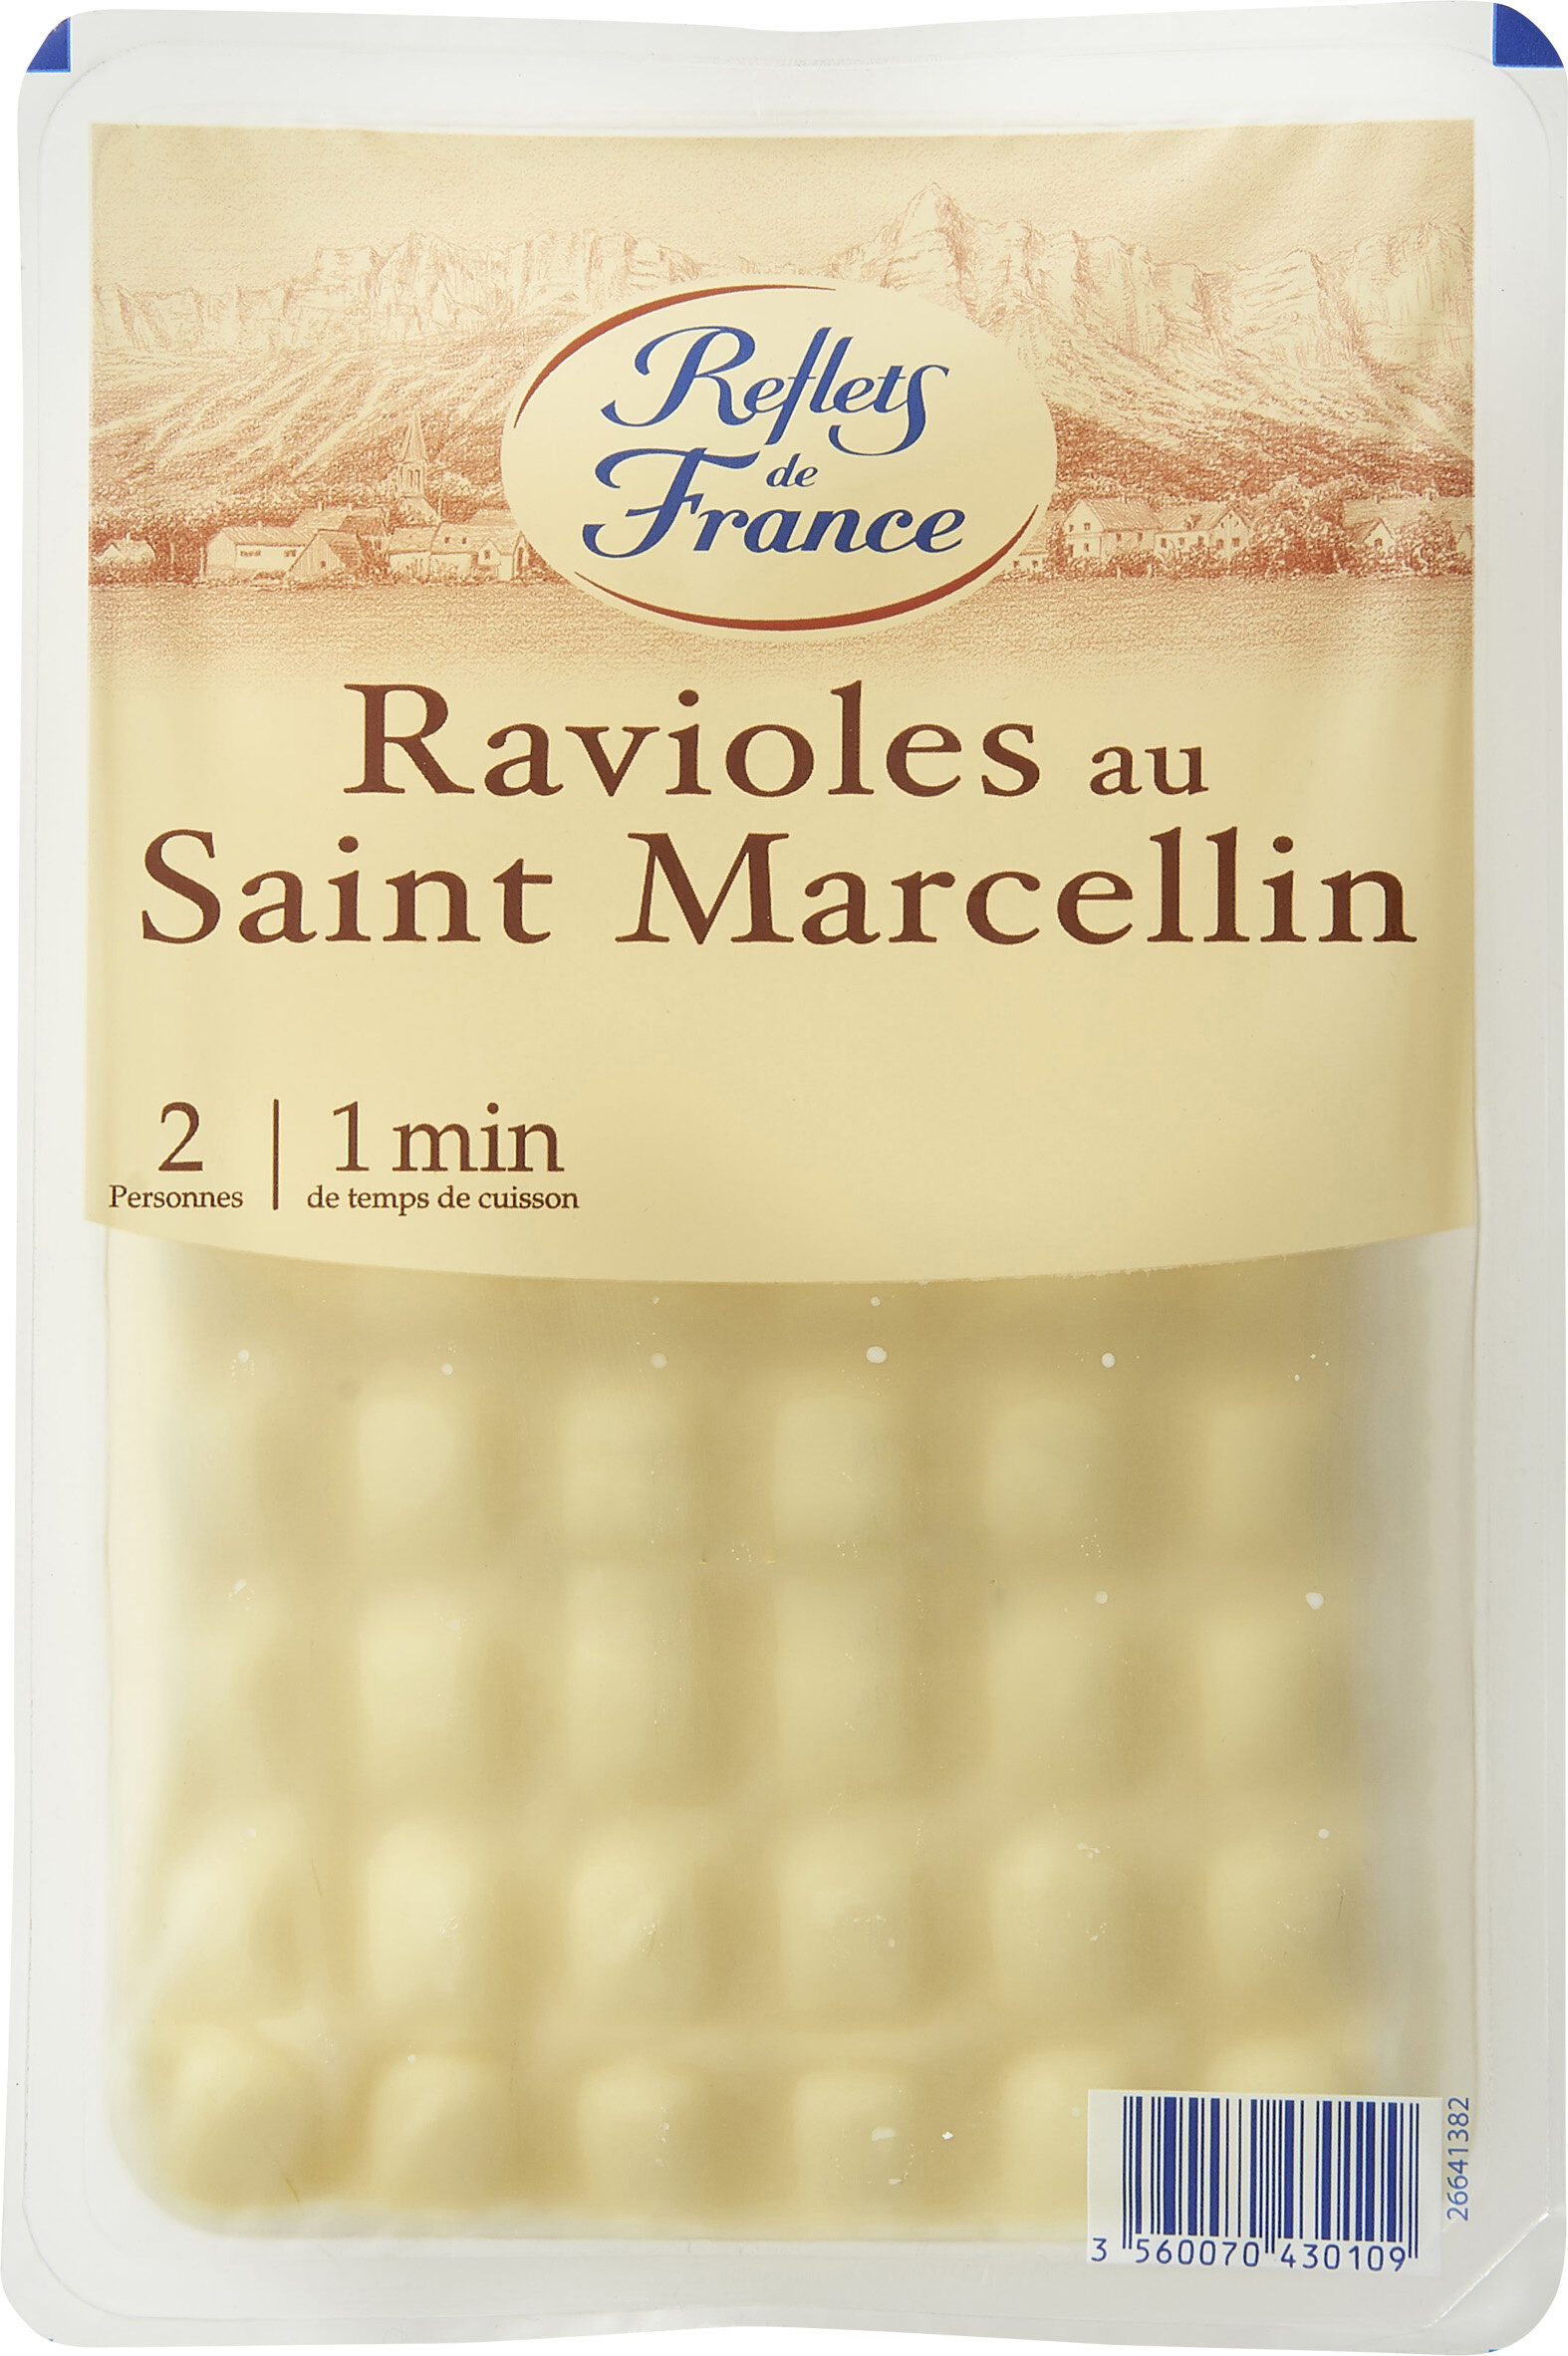 Ravioles au Saint Marcellin - Product - fr